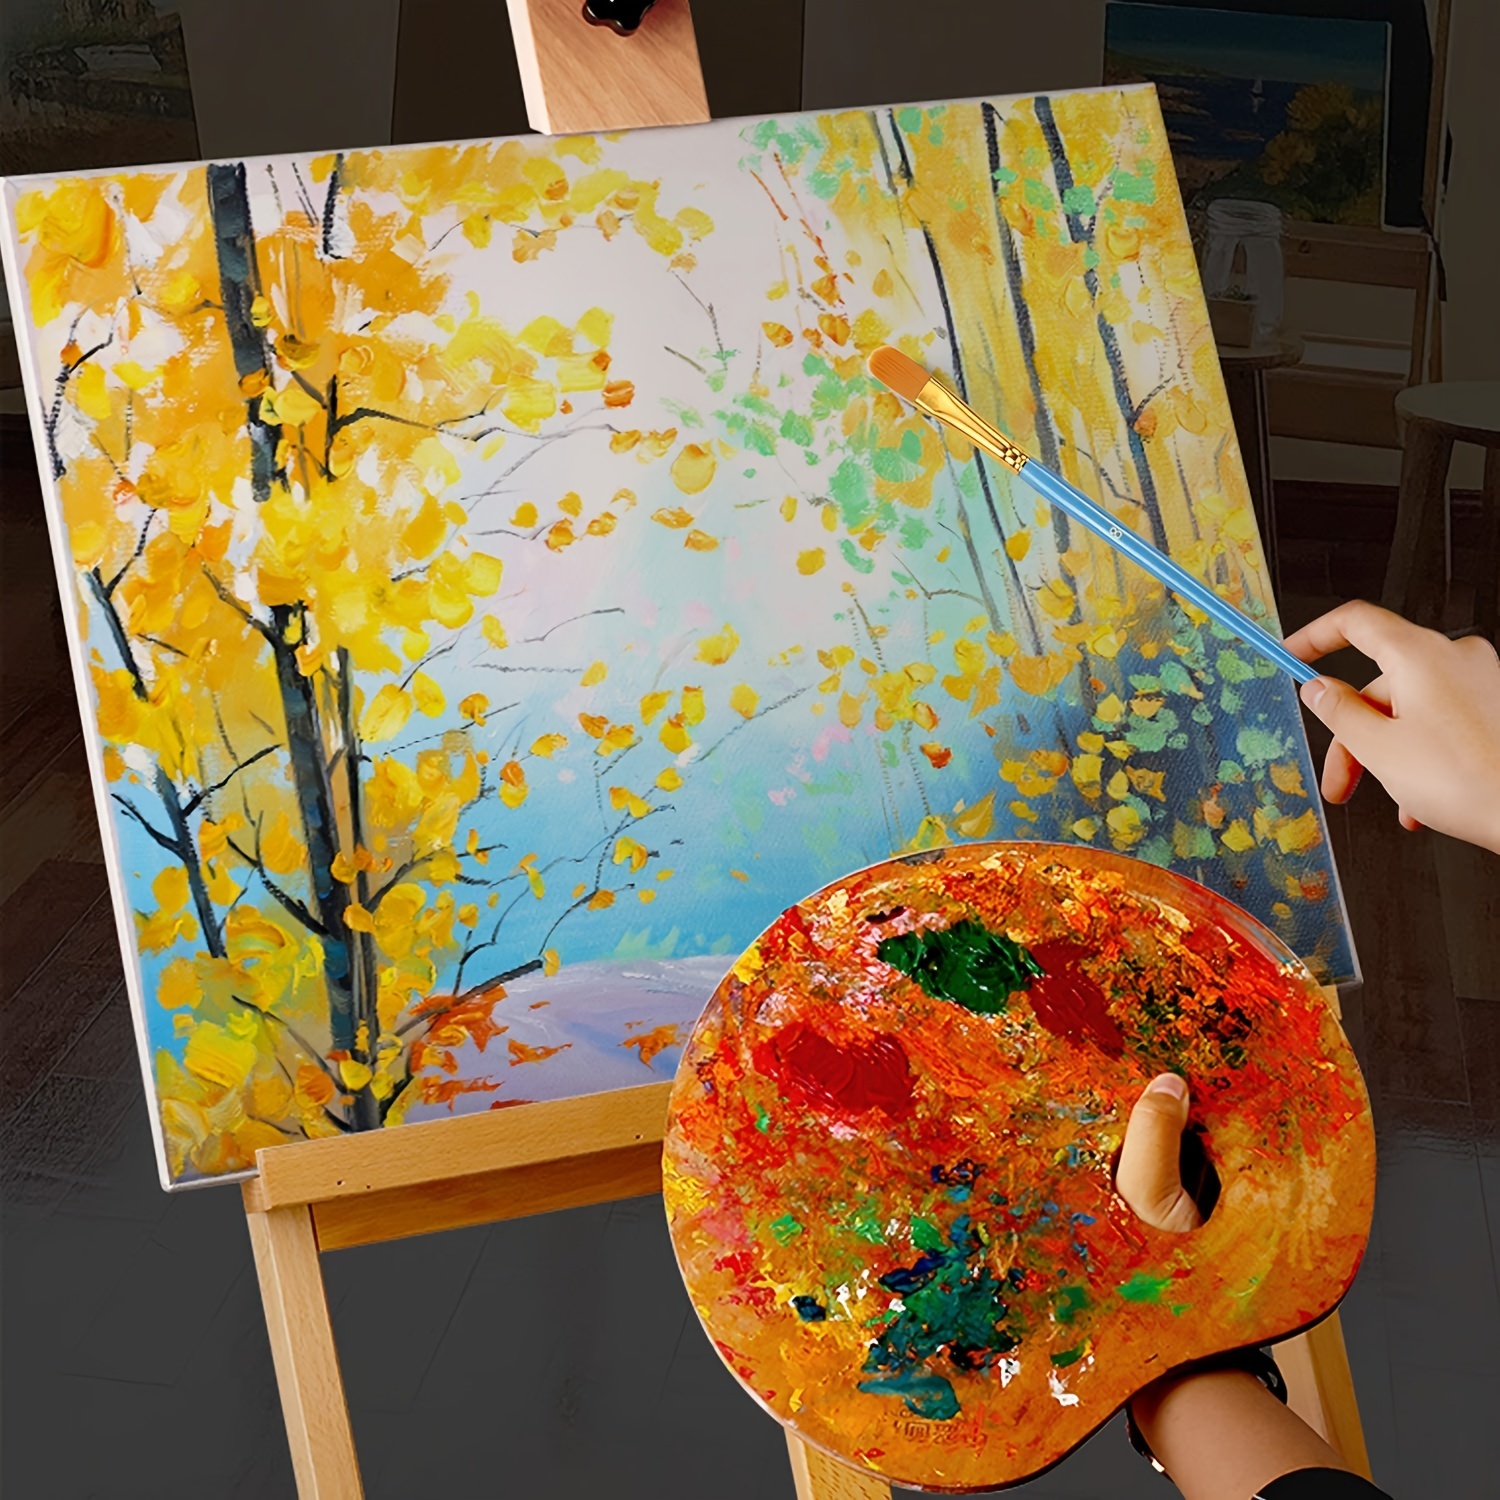 Una pintura colorida con pinceles y pintura en un plato.